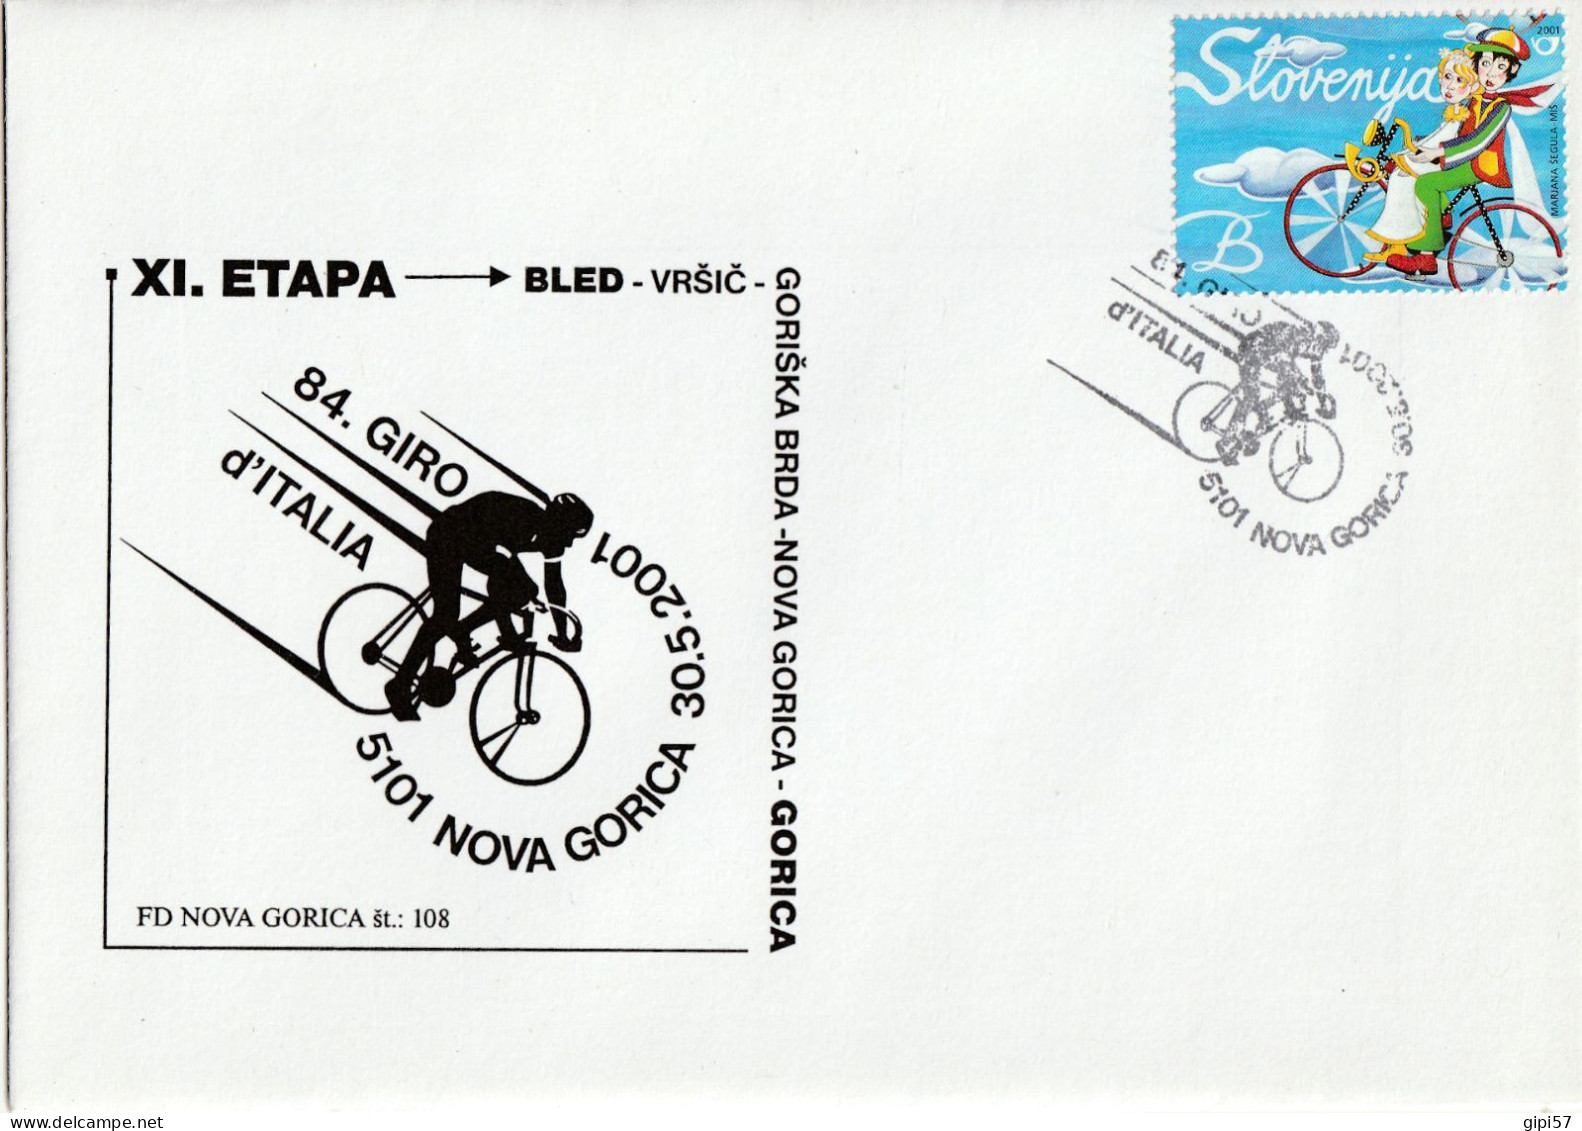 CICLISMO 84. GIRO D'ITALIA 2001 - TAPPA BLED GORIZIA. SLOVENIA. ANNULLO SPECIALE NOVA GORICA SU BUSTA DEDICATA - Cyclisme